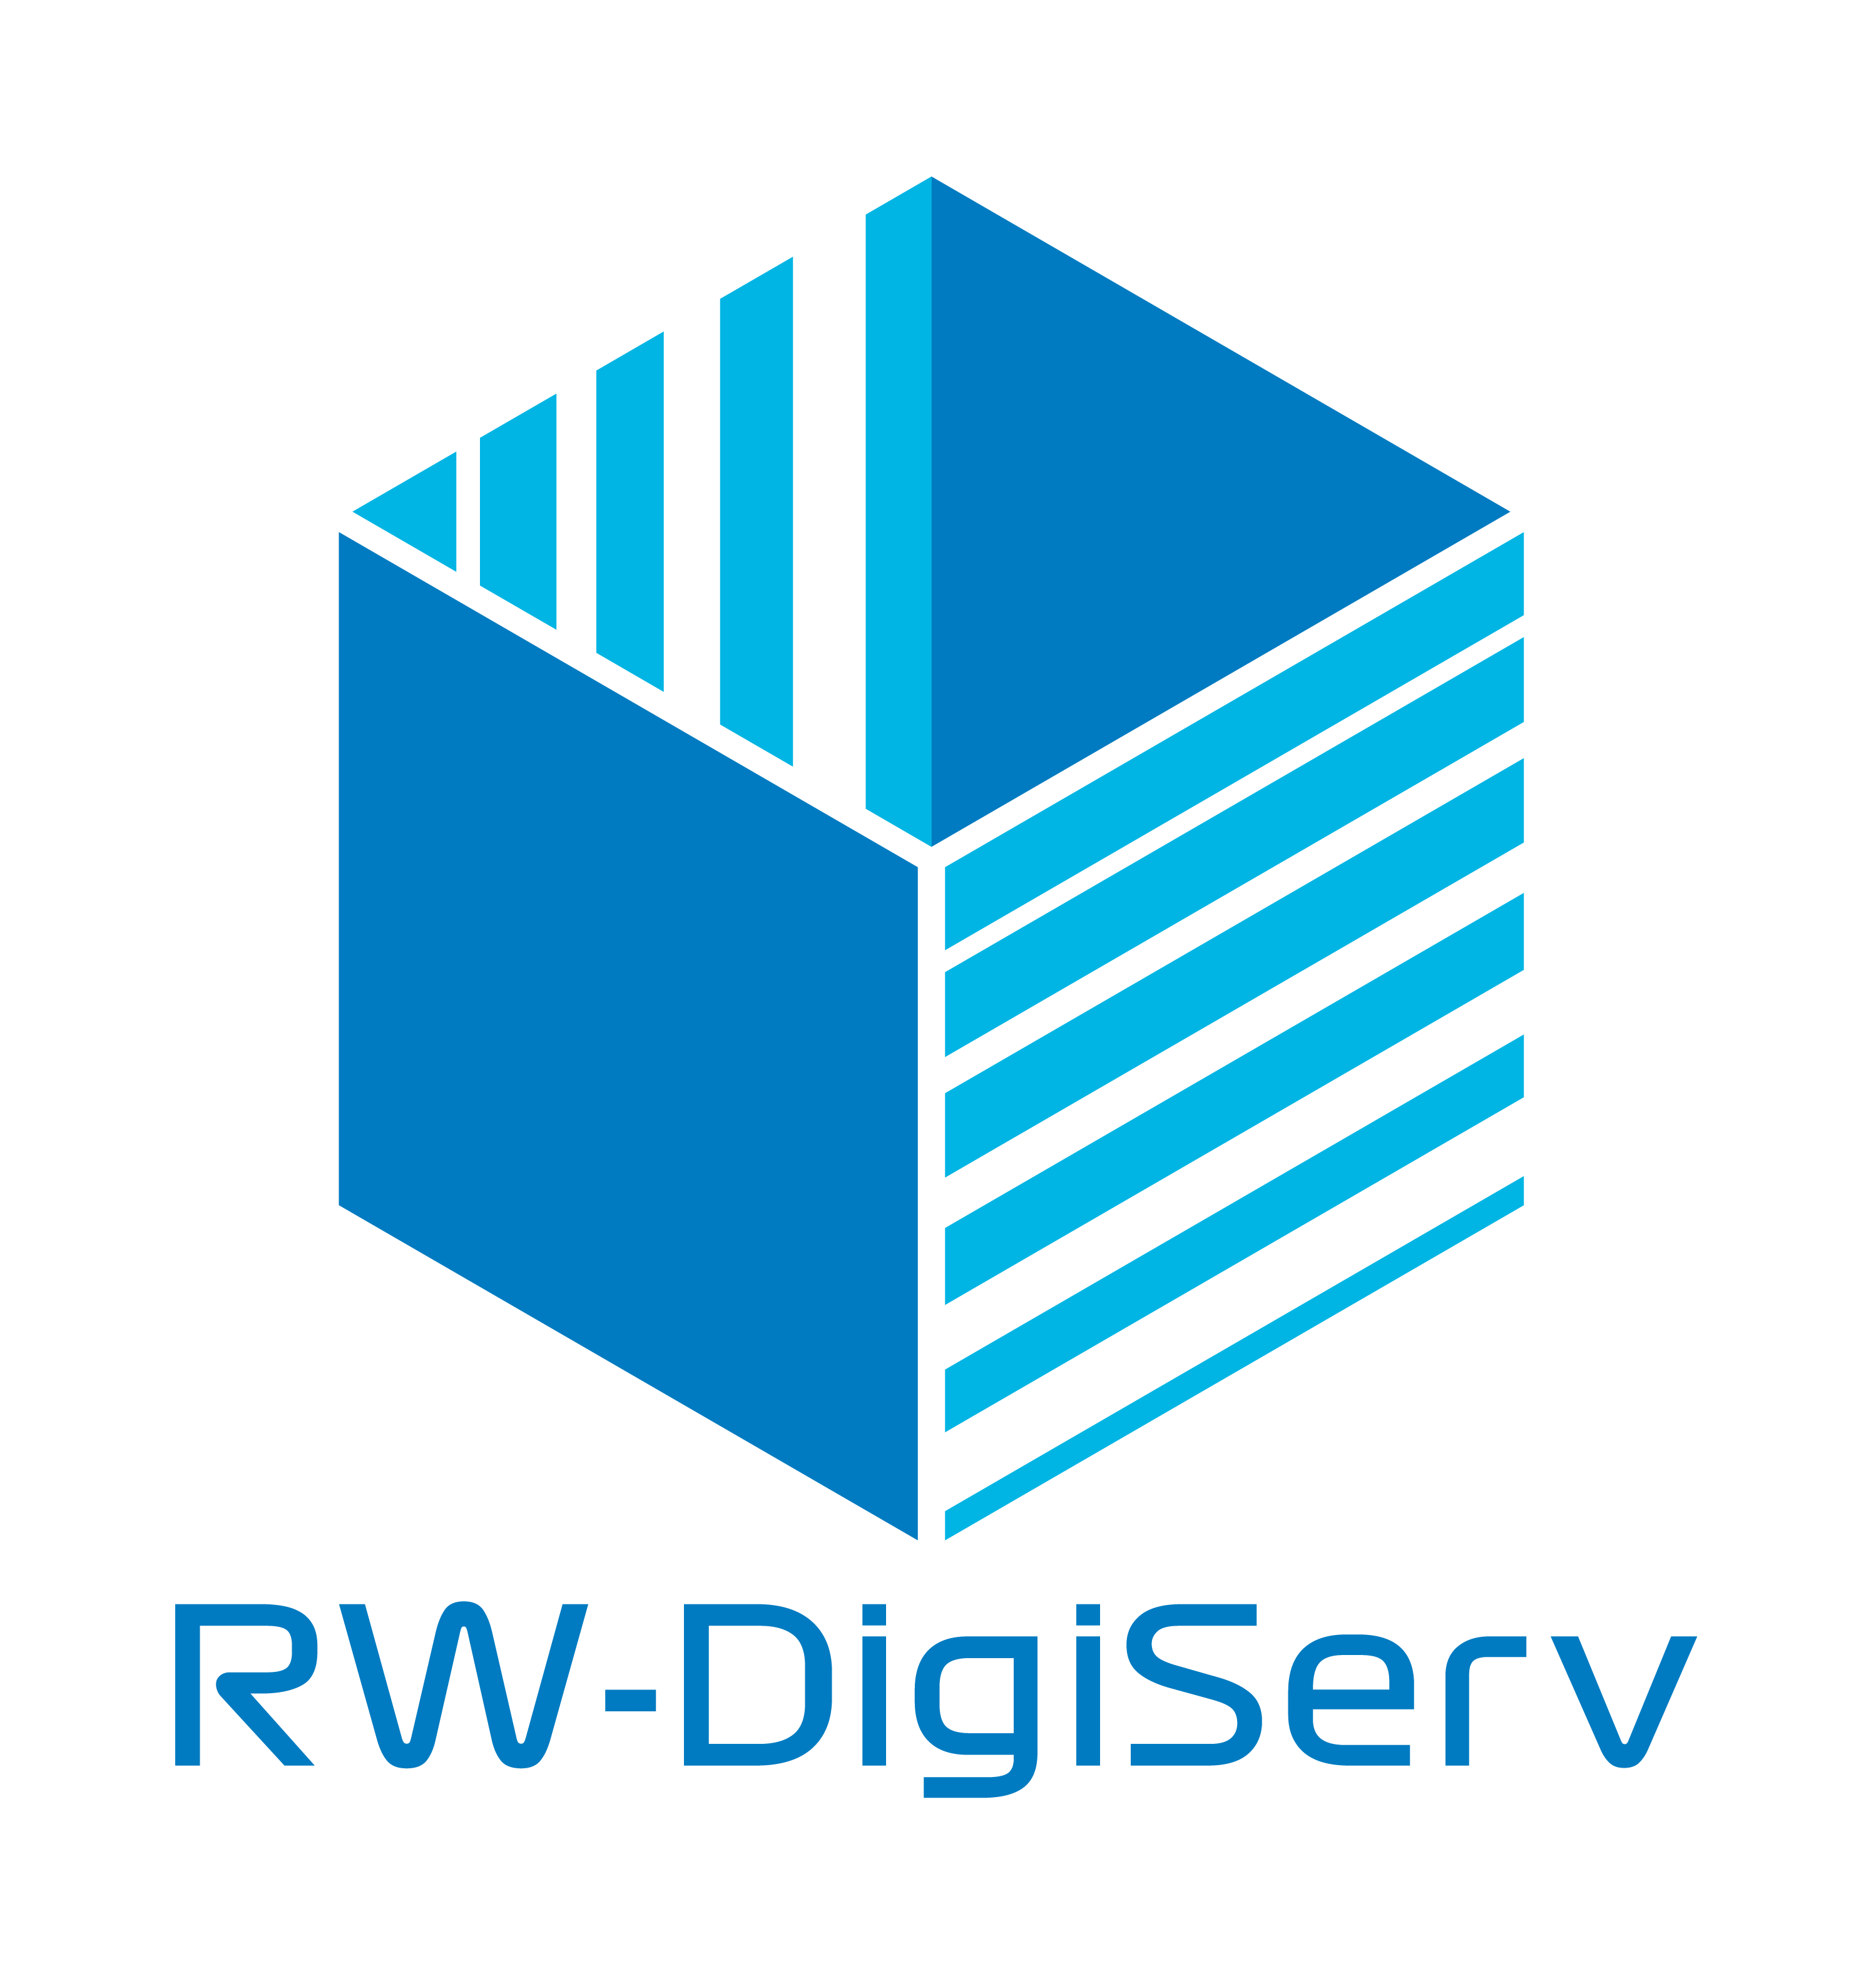 RW-DigiServ